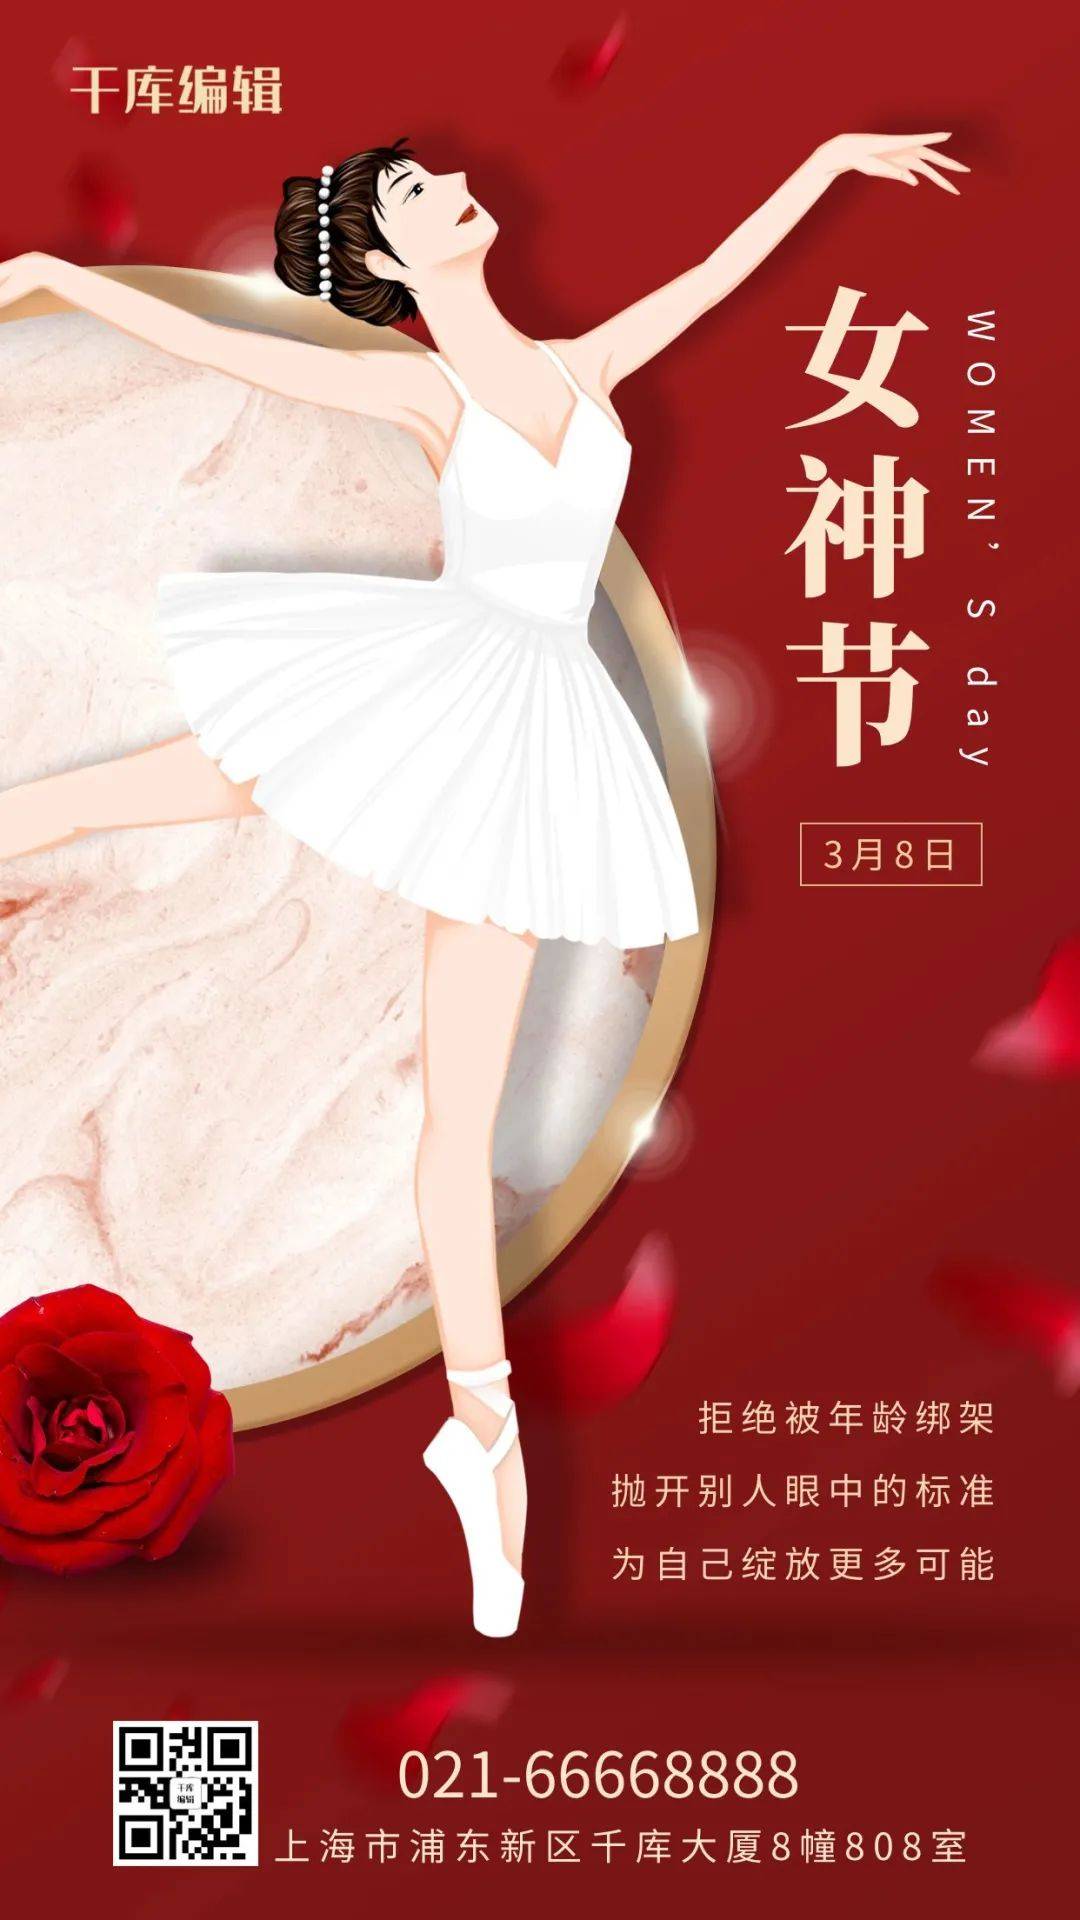 千库编辑的女神节刷屏海报今天,千小萌就为大家你们要的38女王节文案